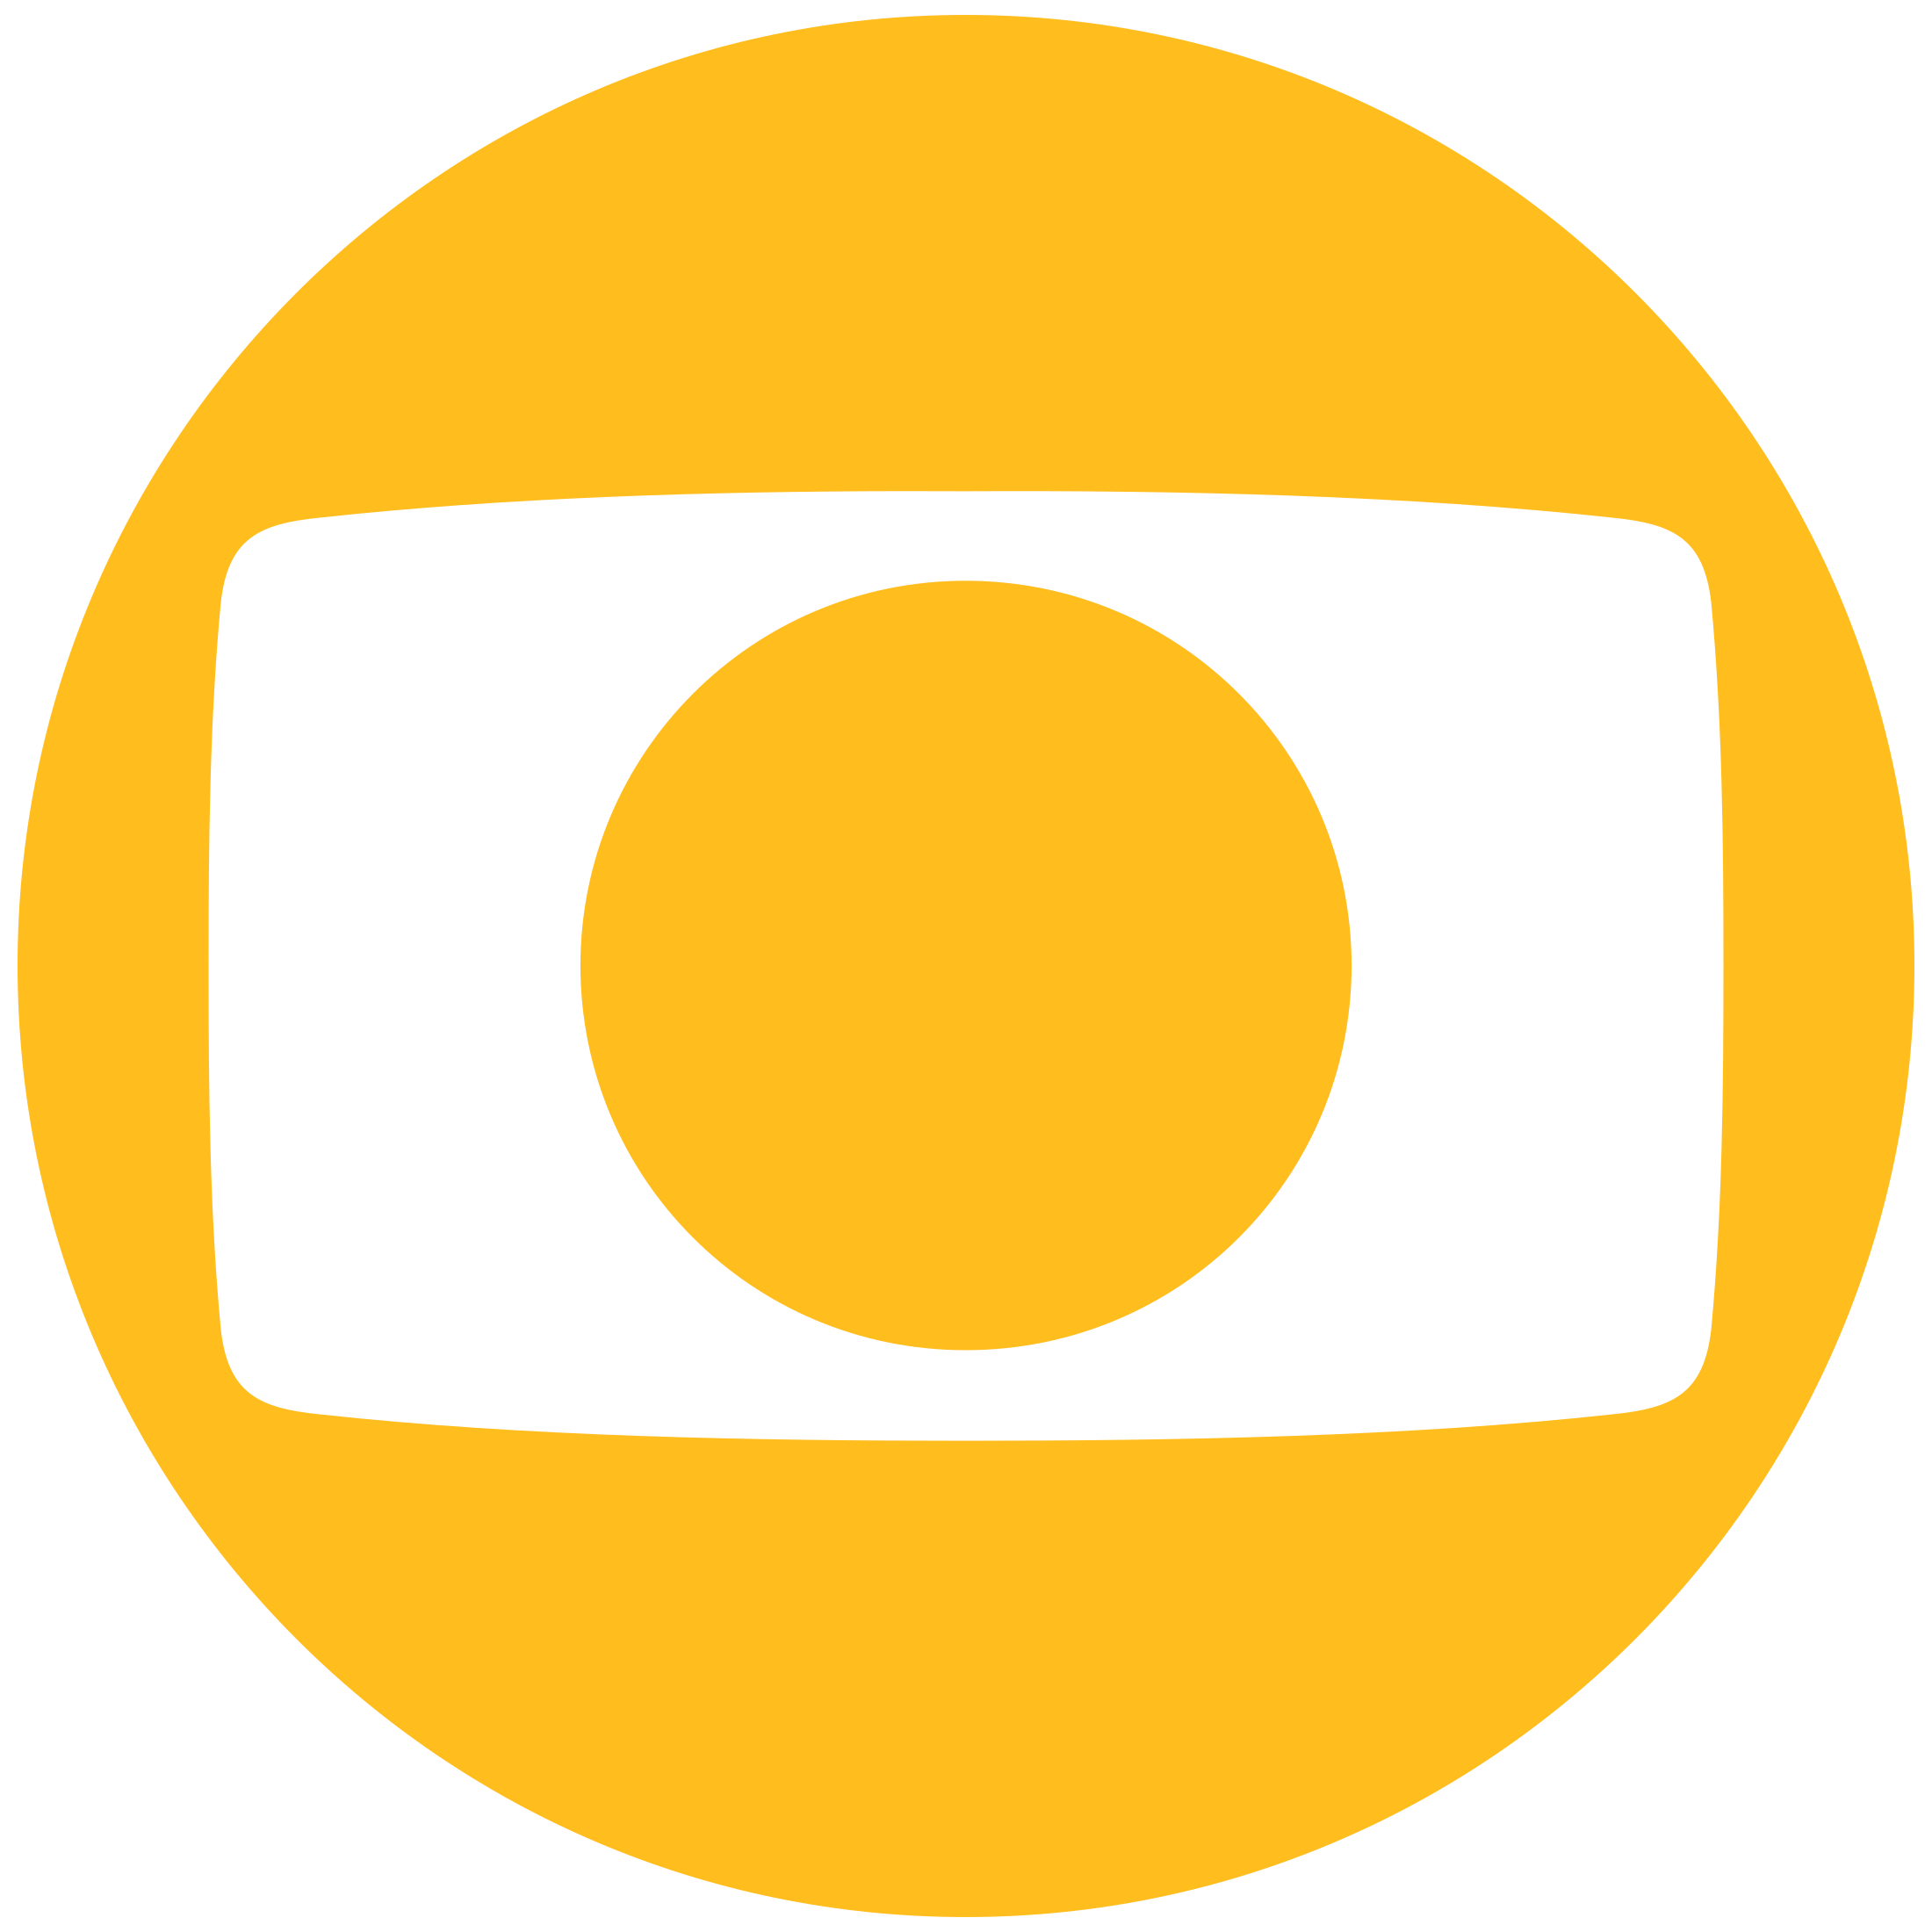 Rede Globo Logo Transparent Images